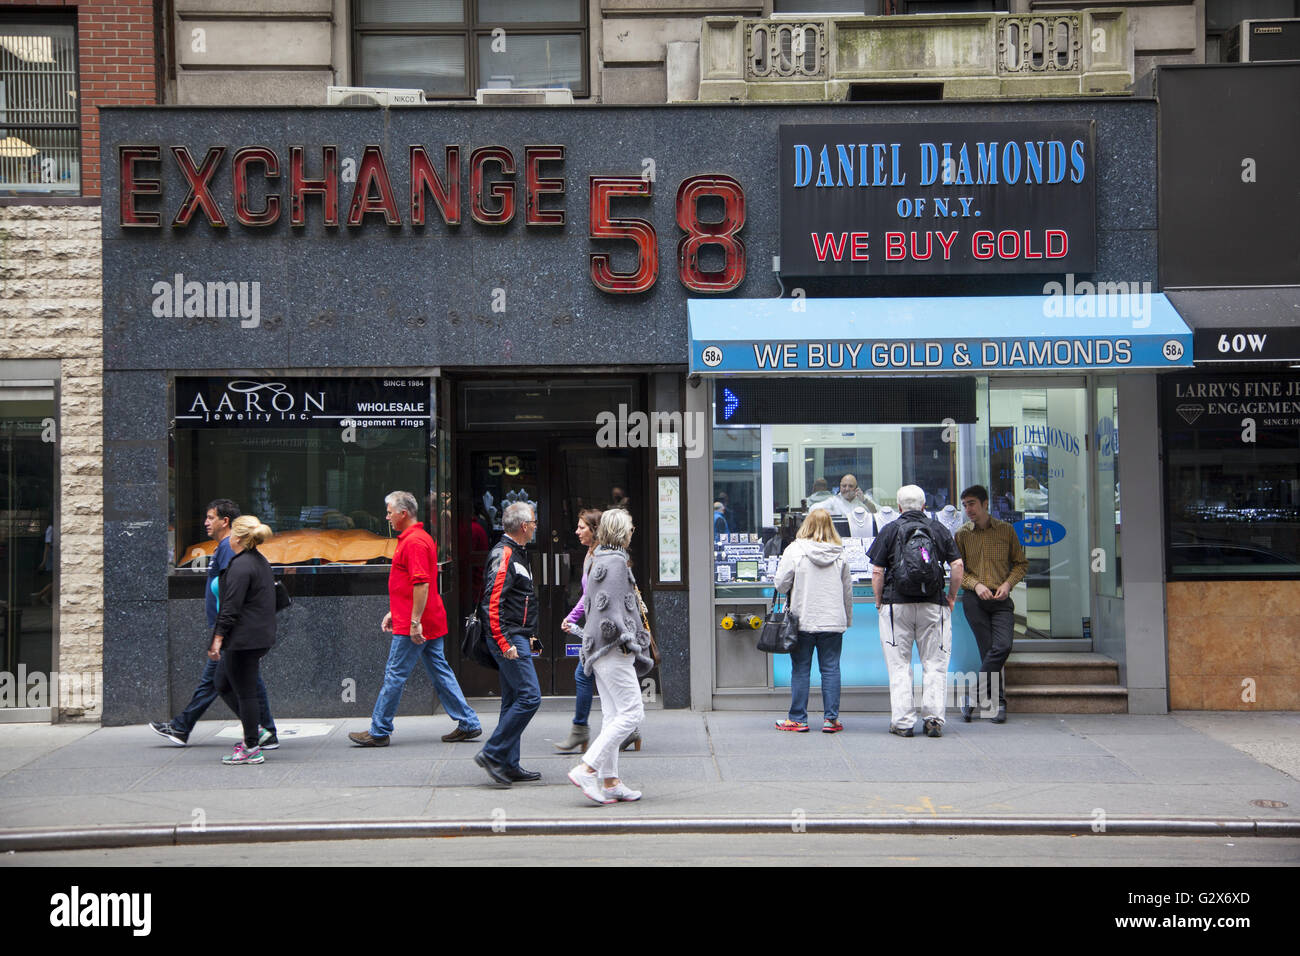 47th Street zwischen der 5. & 6. Avenue in Manhattan ist bekannt als die "Diamond District" in Midtown Manhattan. Stockfoto